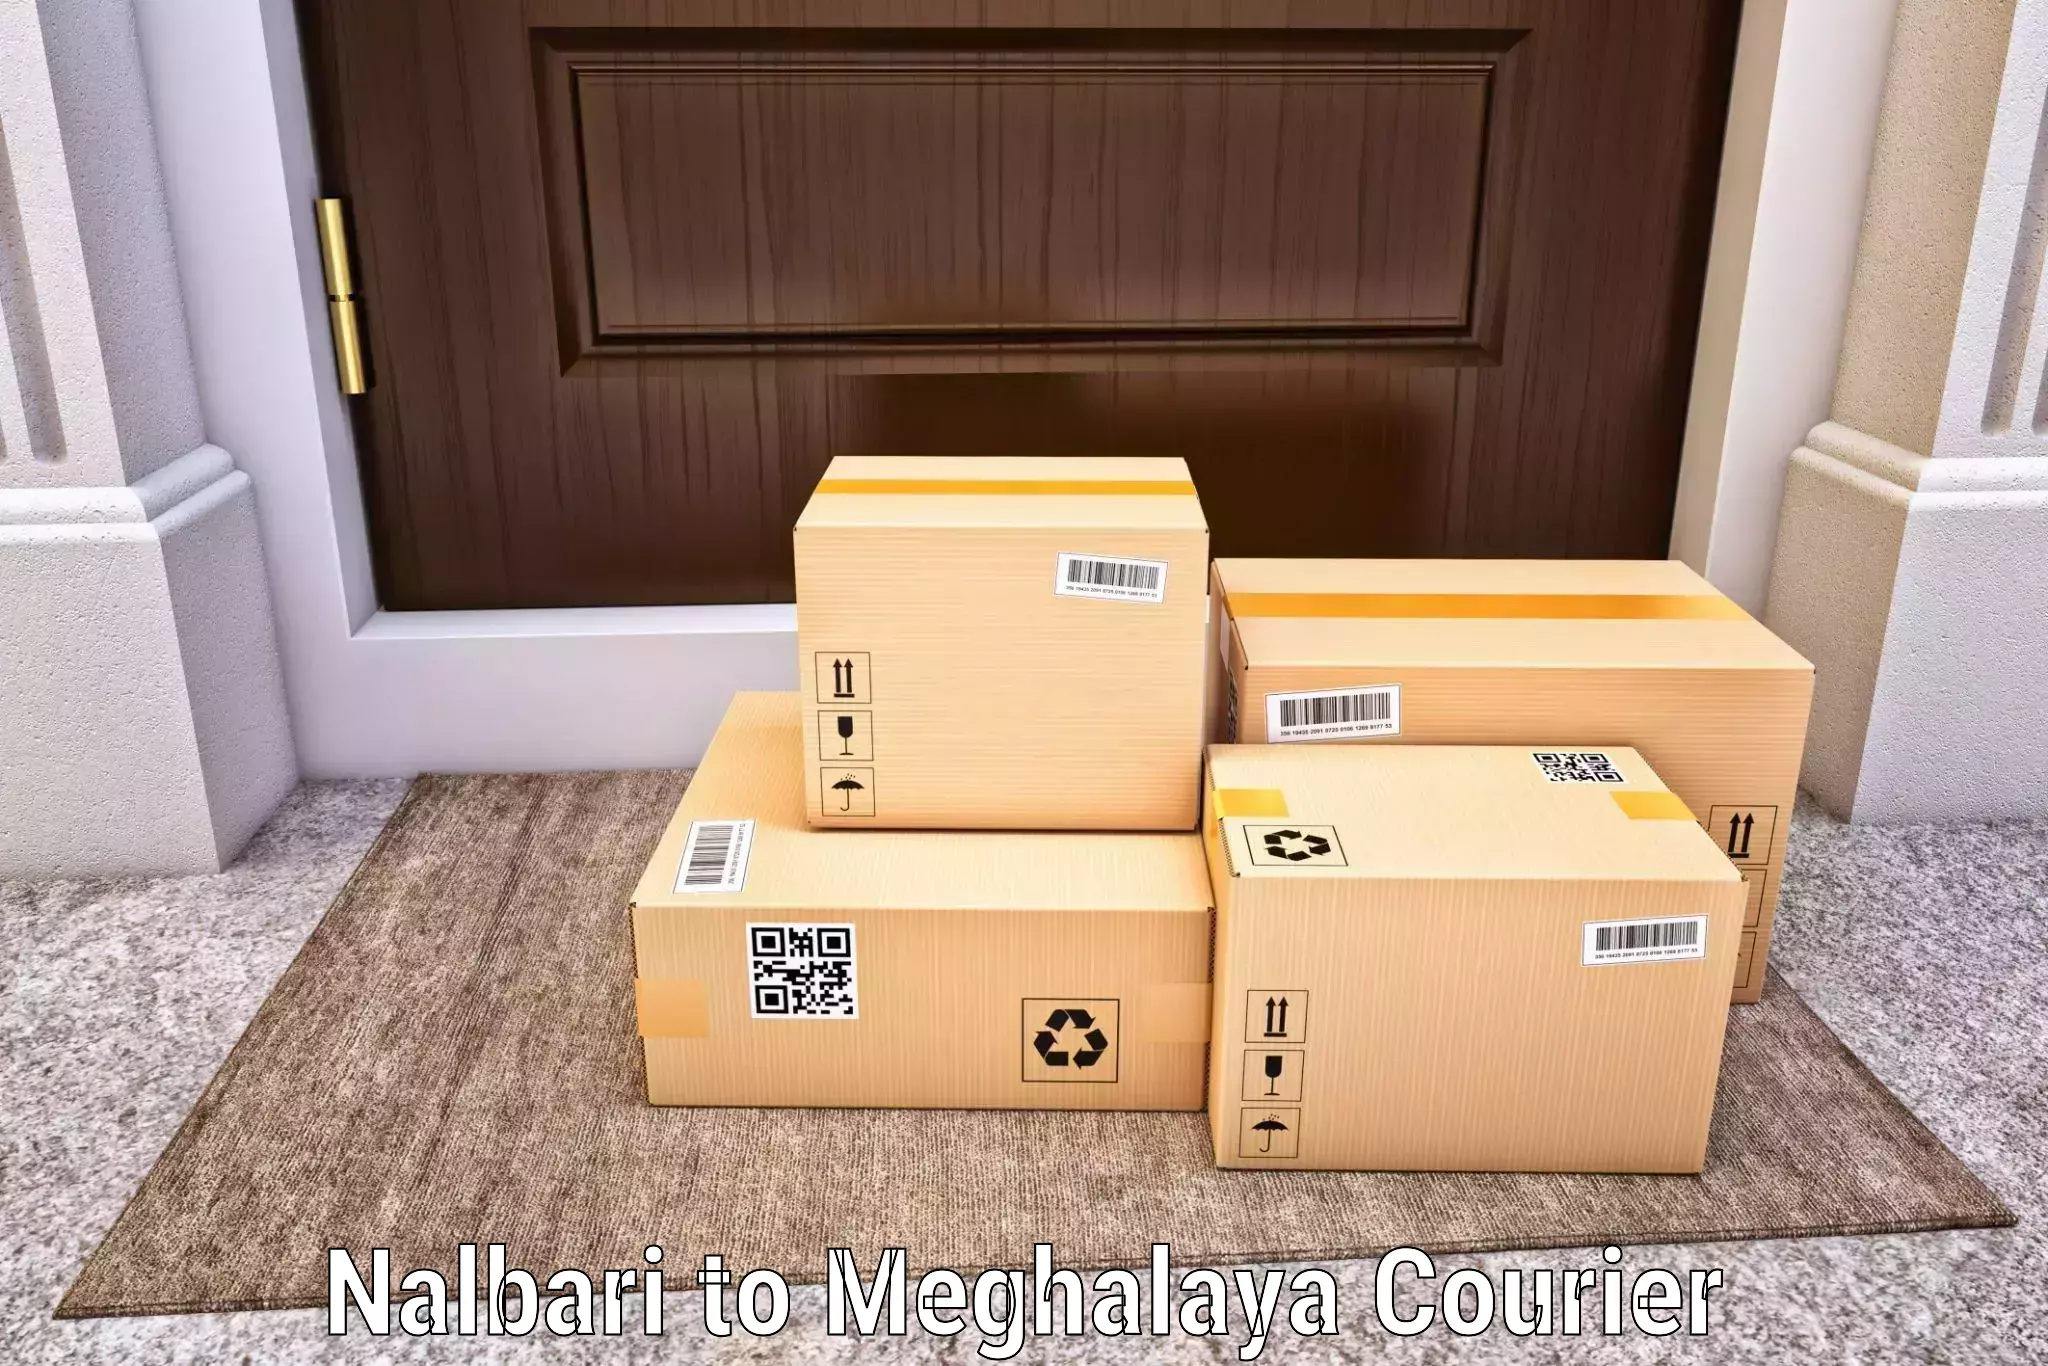 User-friendly courier app Nalbari to Cherrapunji